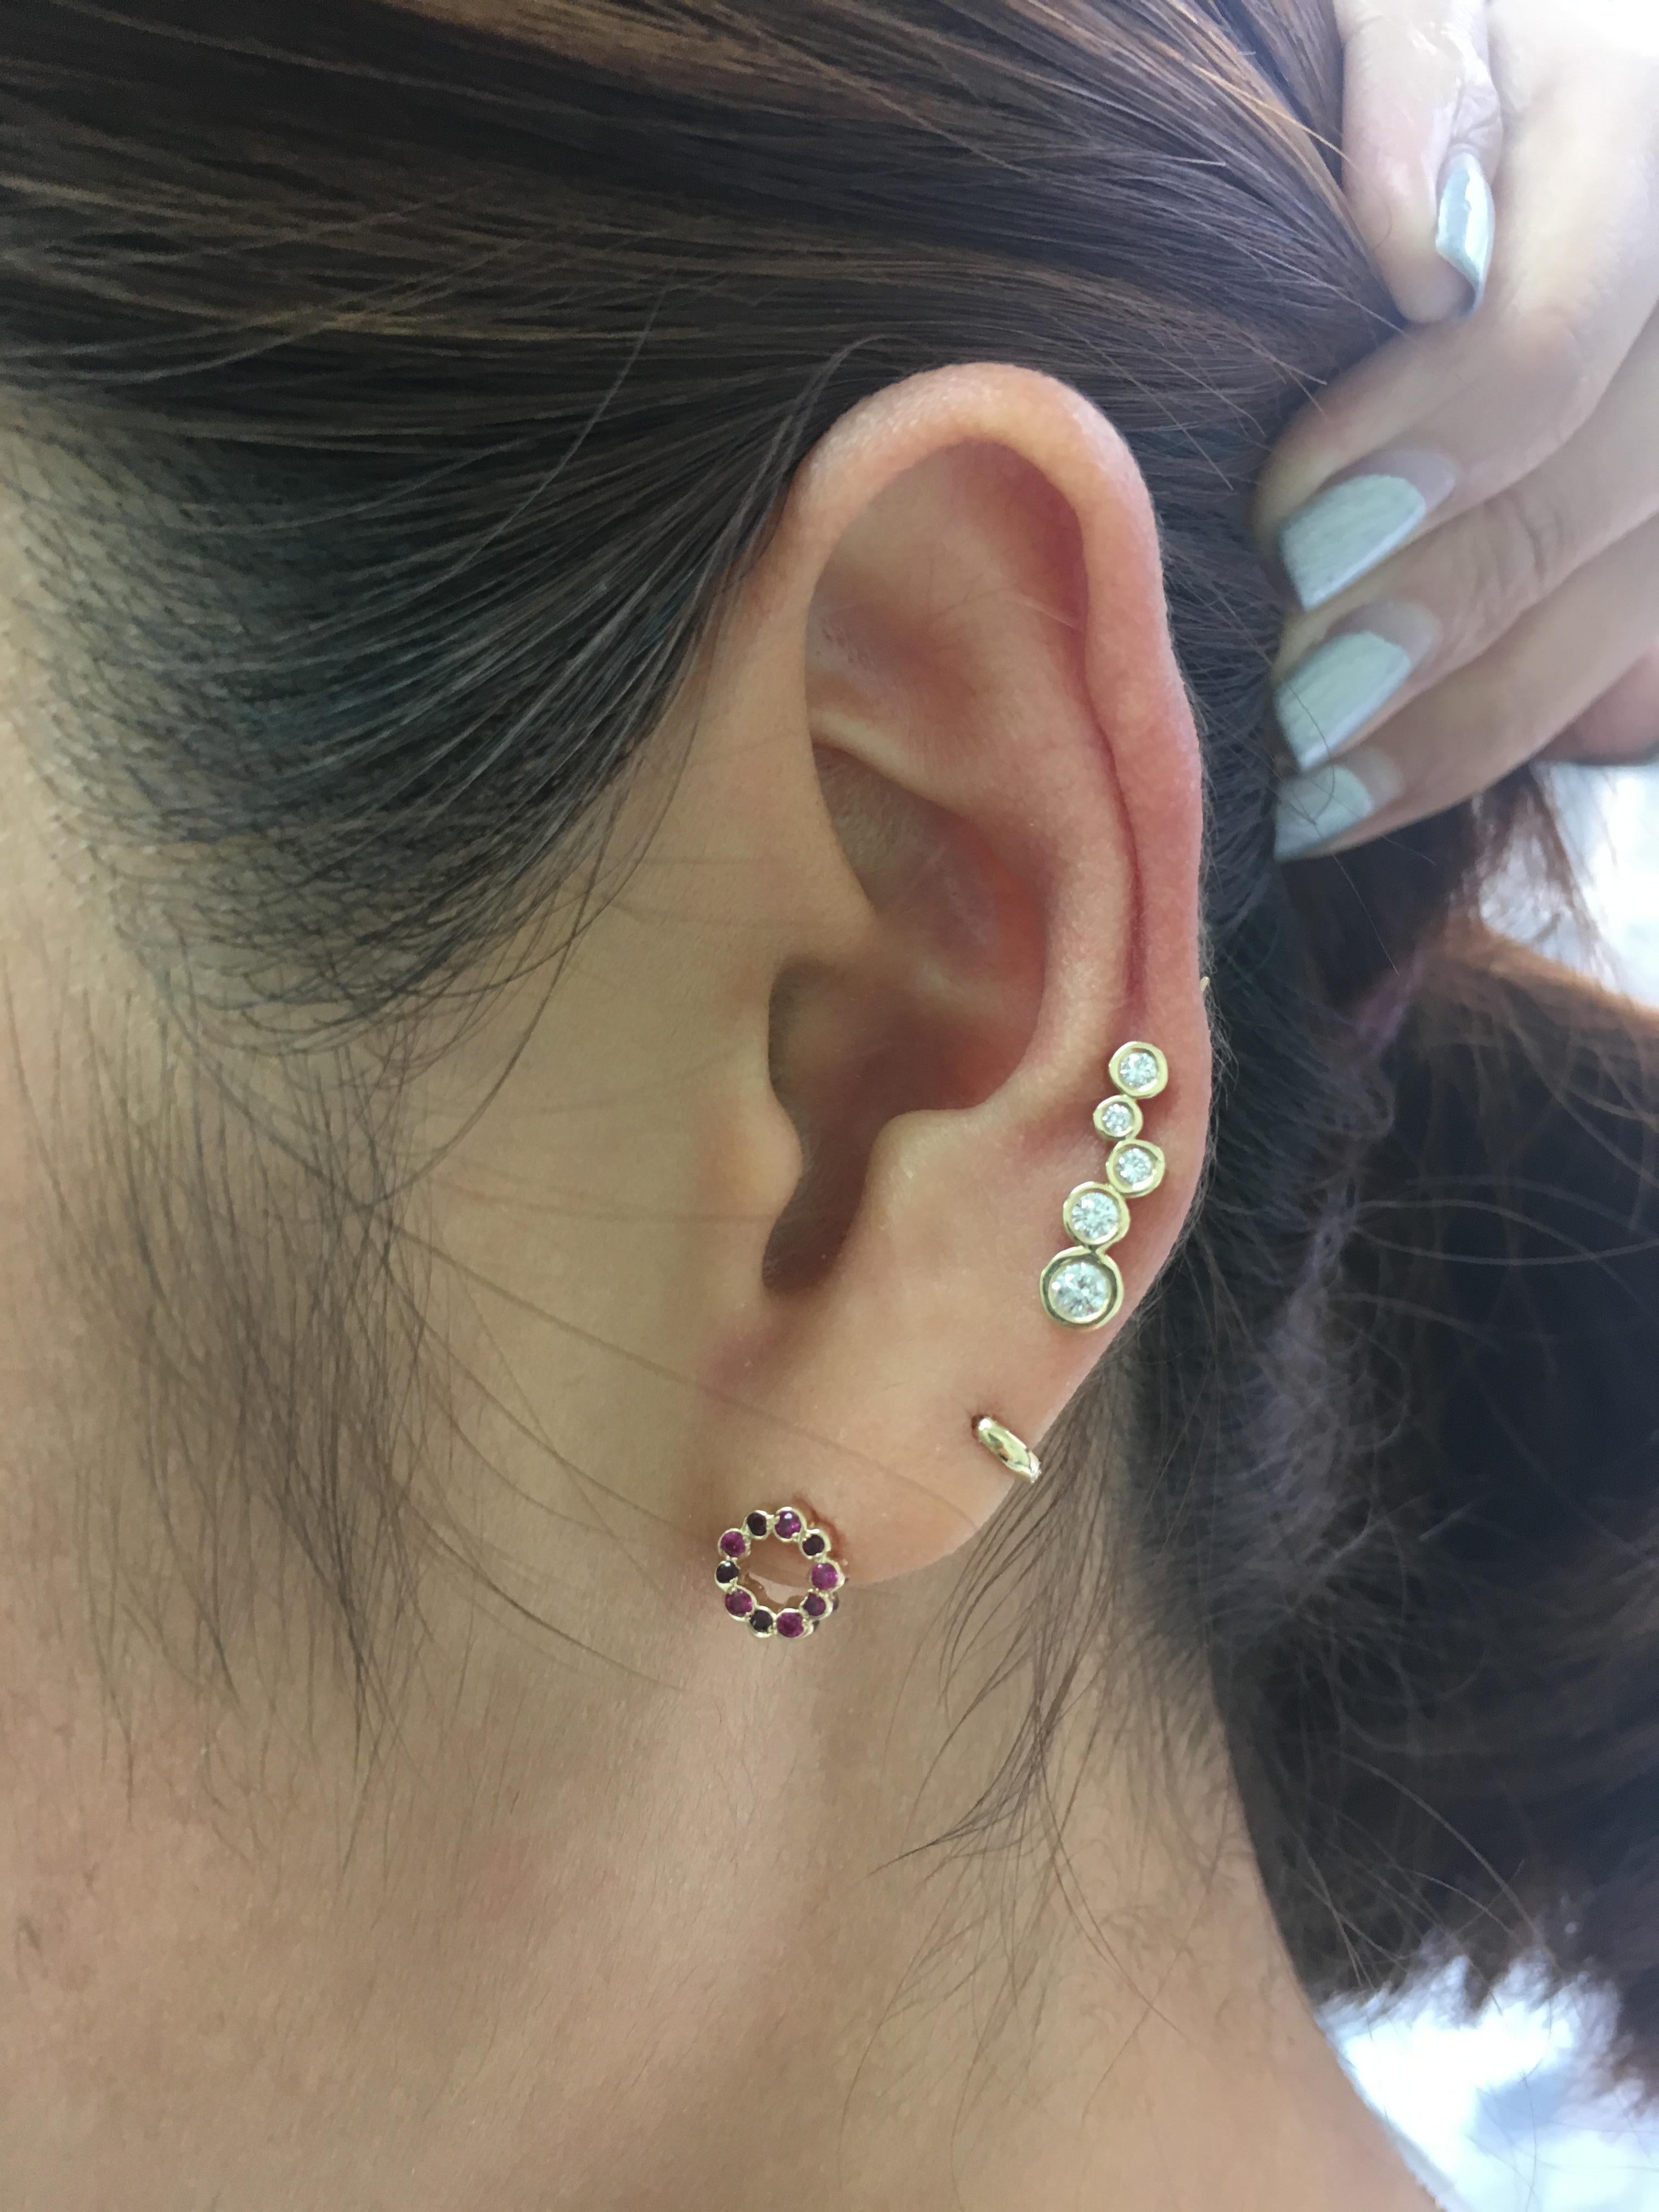 Diese Miniatur-Ohrstecker in Kreisform sind die perfekte Möglichkeit, um einen Hauch von
farbe in die Ohren. Kombiniere sie mit deinem Lieblingsohrring und trage sie als witziges Einzelstück.

Verkauft als einzelner Ohrring (nicht als Paar)

14k